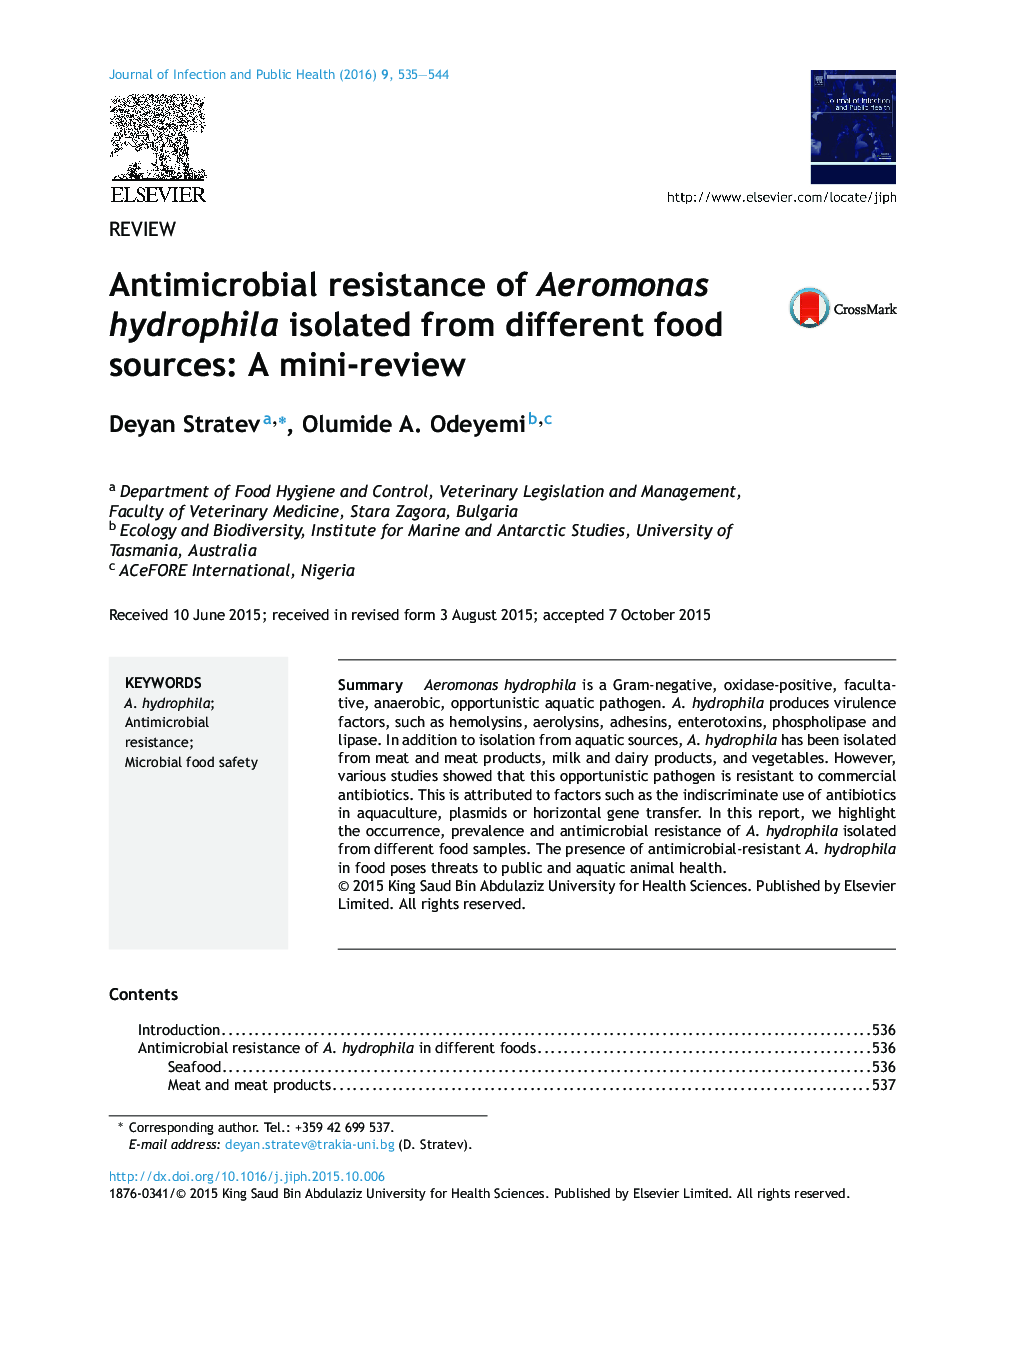 مقاومت ضدمیکروبی هیدروفیلا آئروموناس جدا شده از منابع غذایی مختلف: یک مینی بررسی